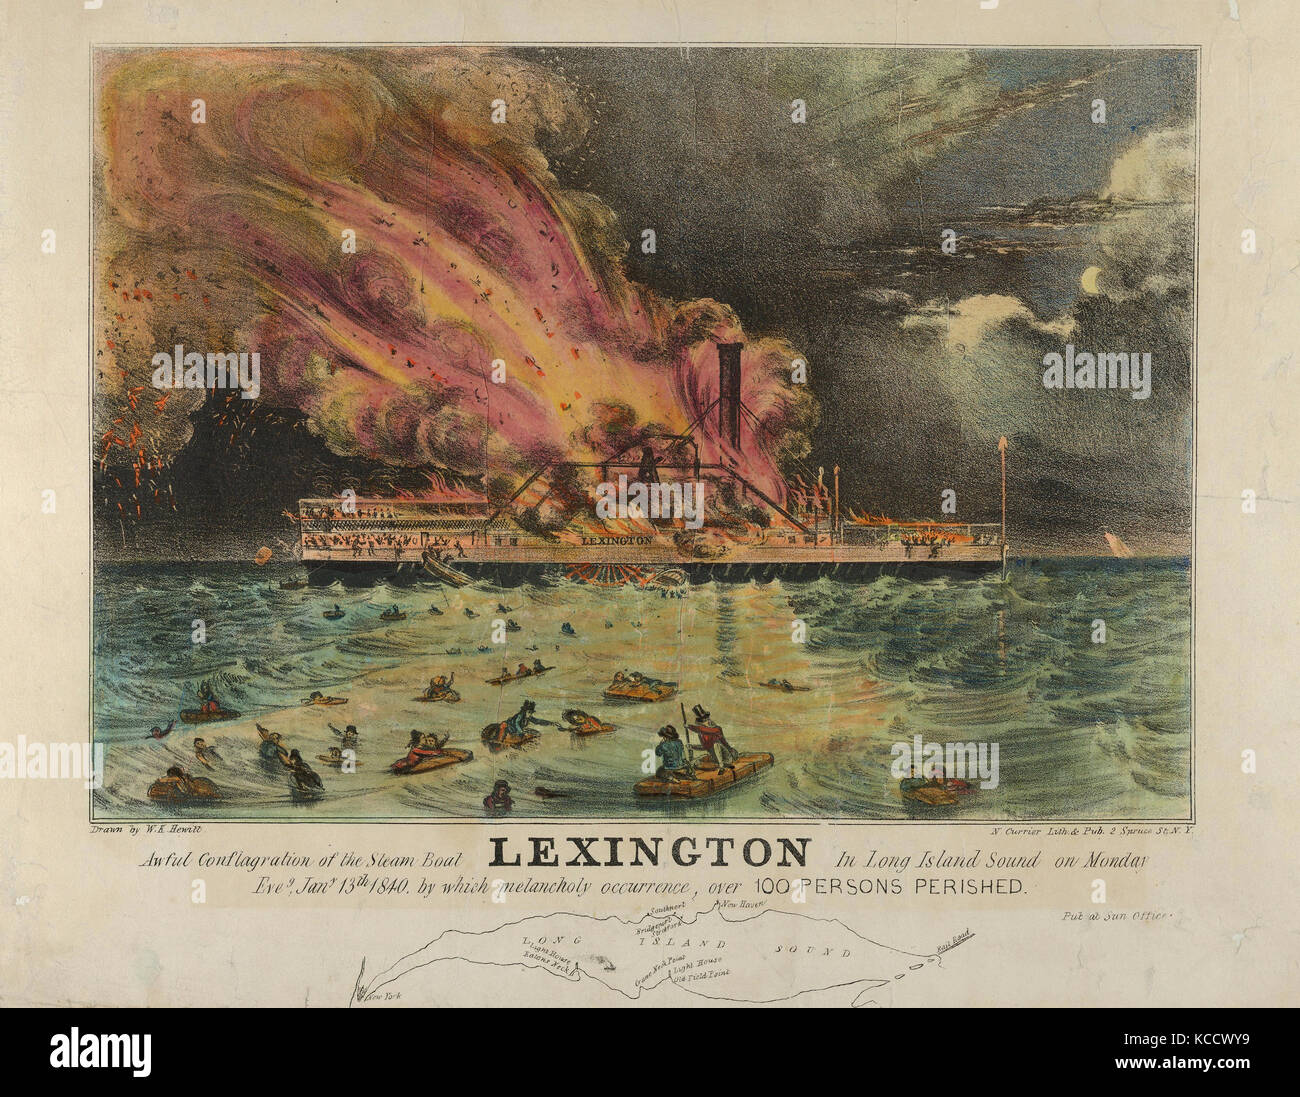 Dibujos y Grabados, Impresión horrible conflagración de el barco de vapor Lexington en Long Island Sound en vísperas del lunes, 13 de enero de Foto de stock